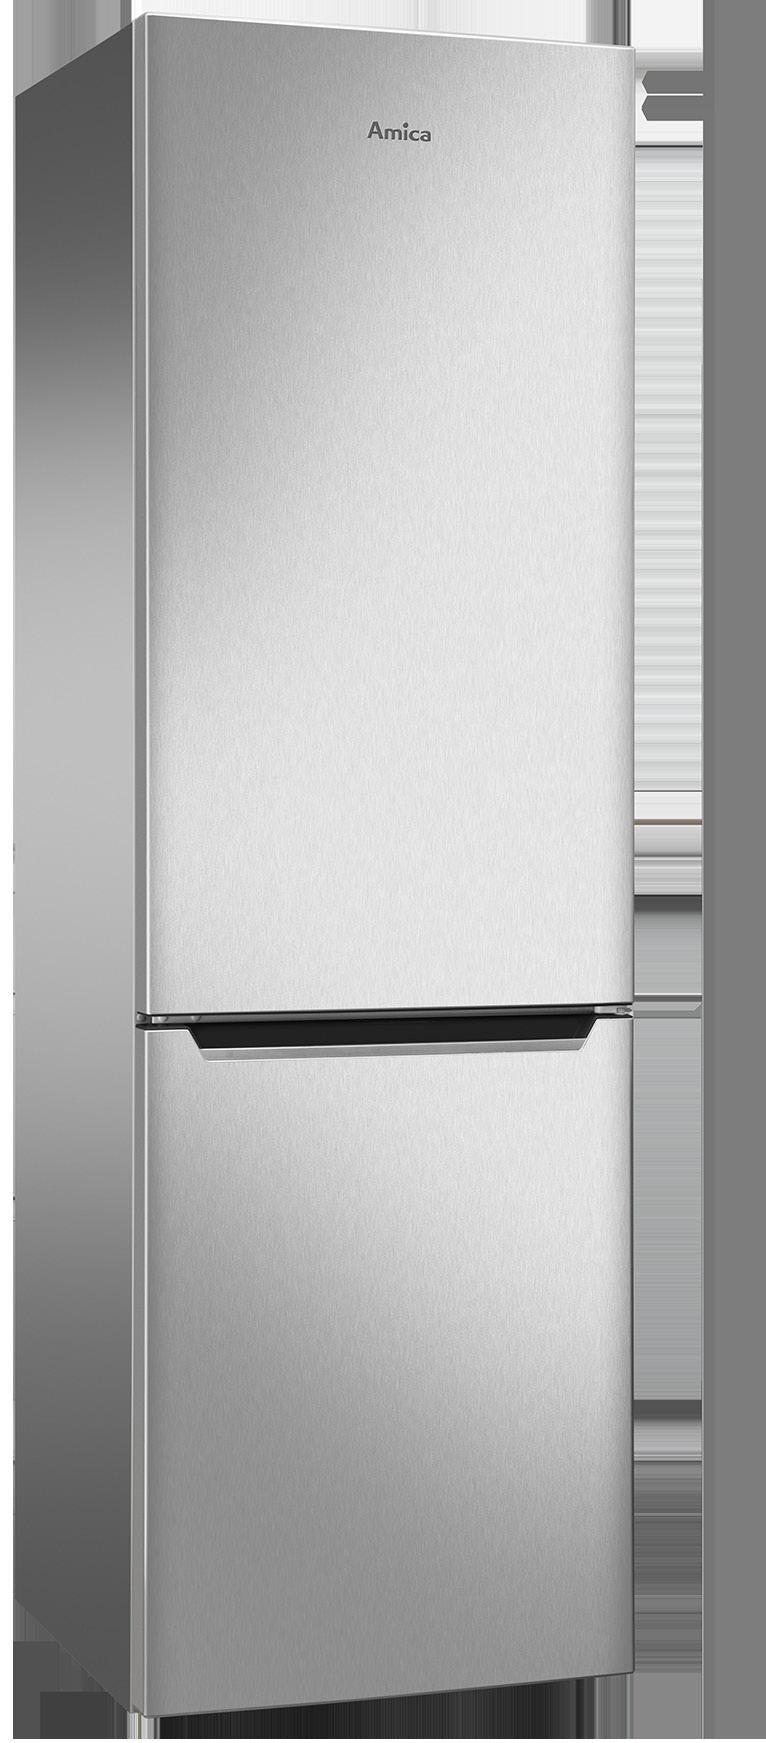 Potencia sonora 42 db(a) Capacidad útil frigorífico/congelador: 217/80 l Poder de congelación: 5 kg/24 horas Display    Potencia sonora 42